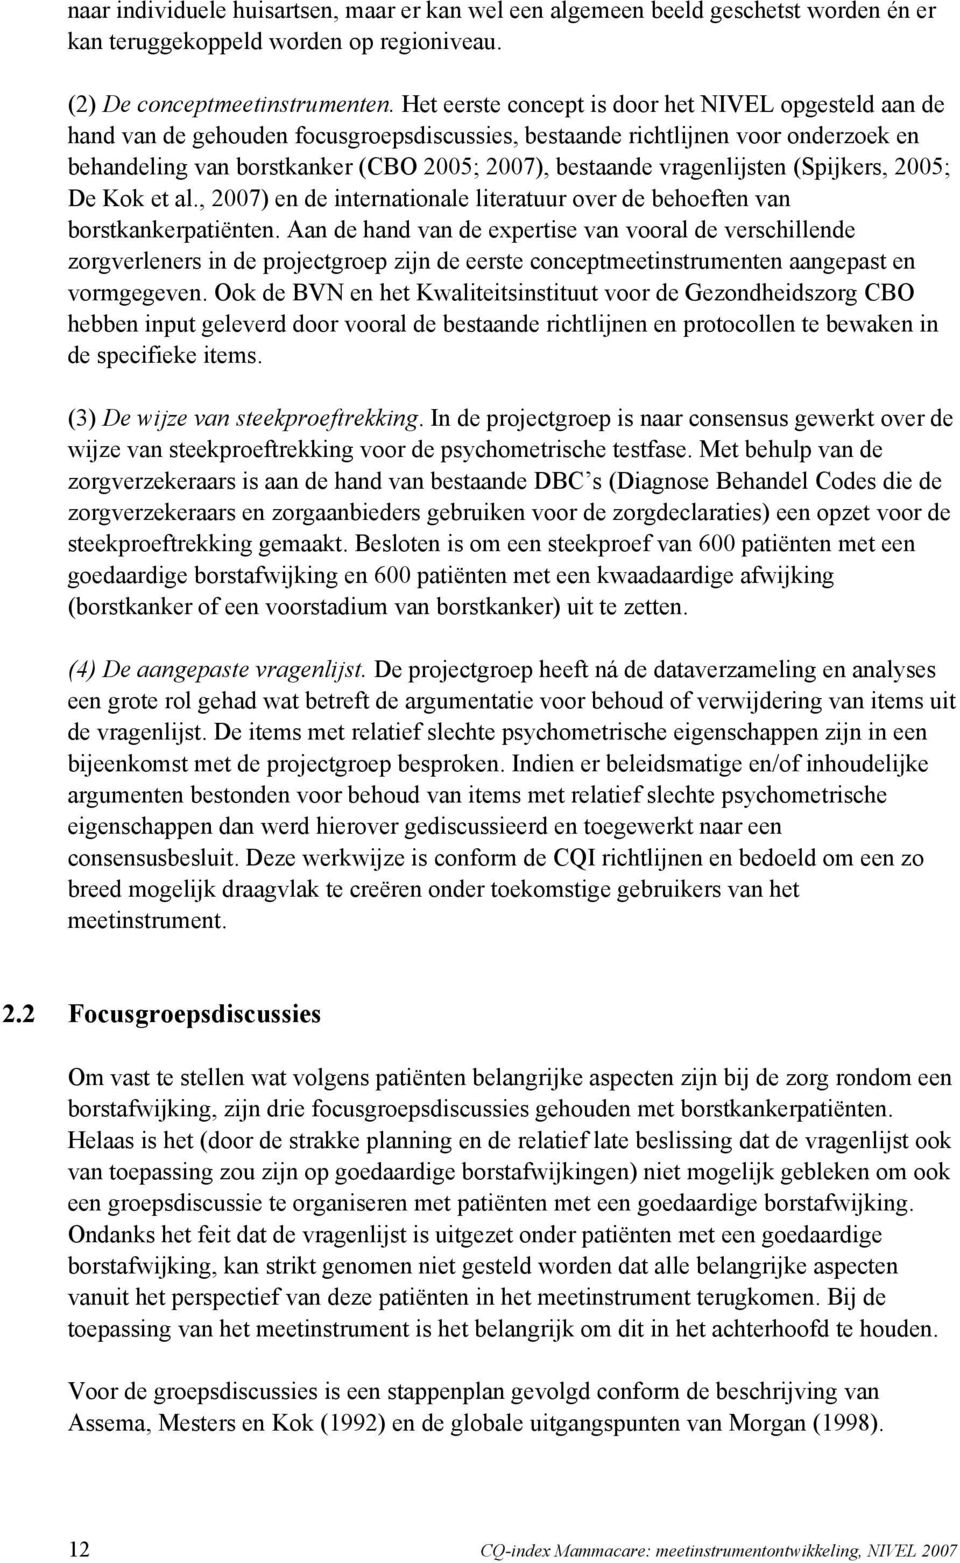 vragenlijsten (Spijkers, 2005; De Kok et al., 2007) en de internationale literatuur over de behoeften van borstkankerpatiënten.